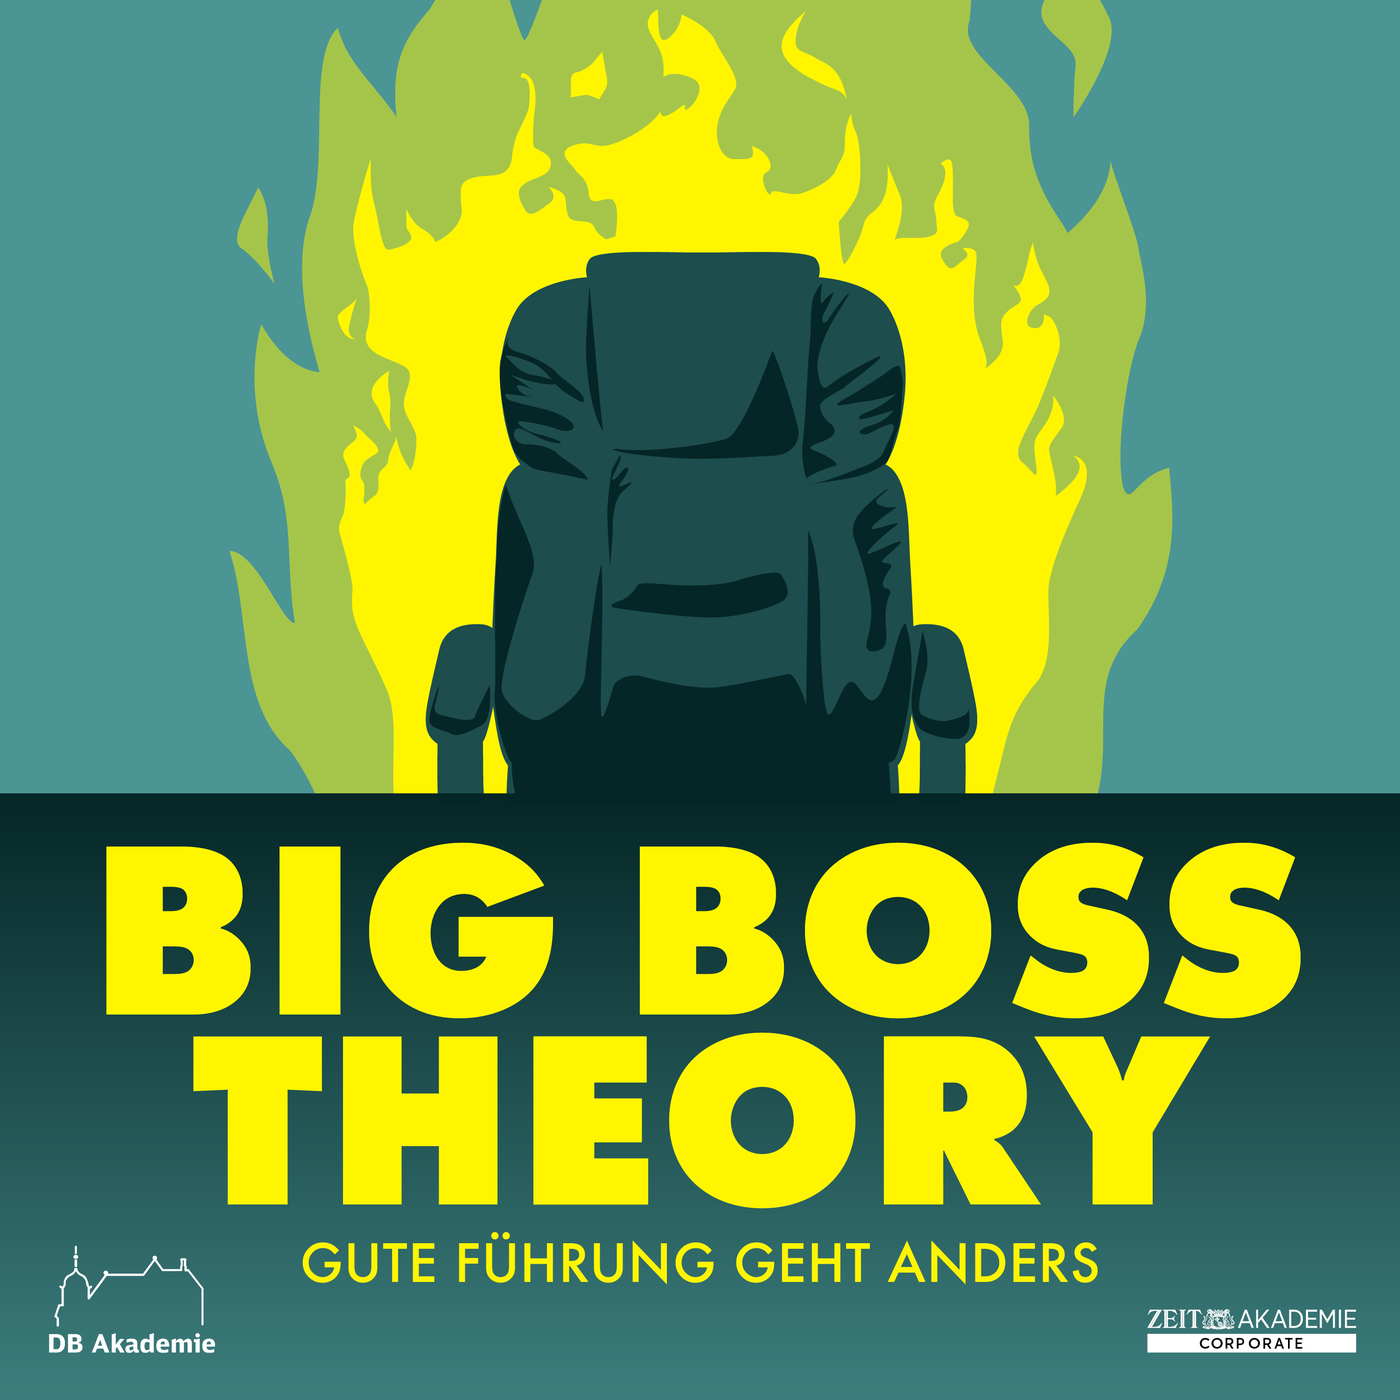 Jetzt weiterhören: Big Boss Theory - Gute Führung geht anders